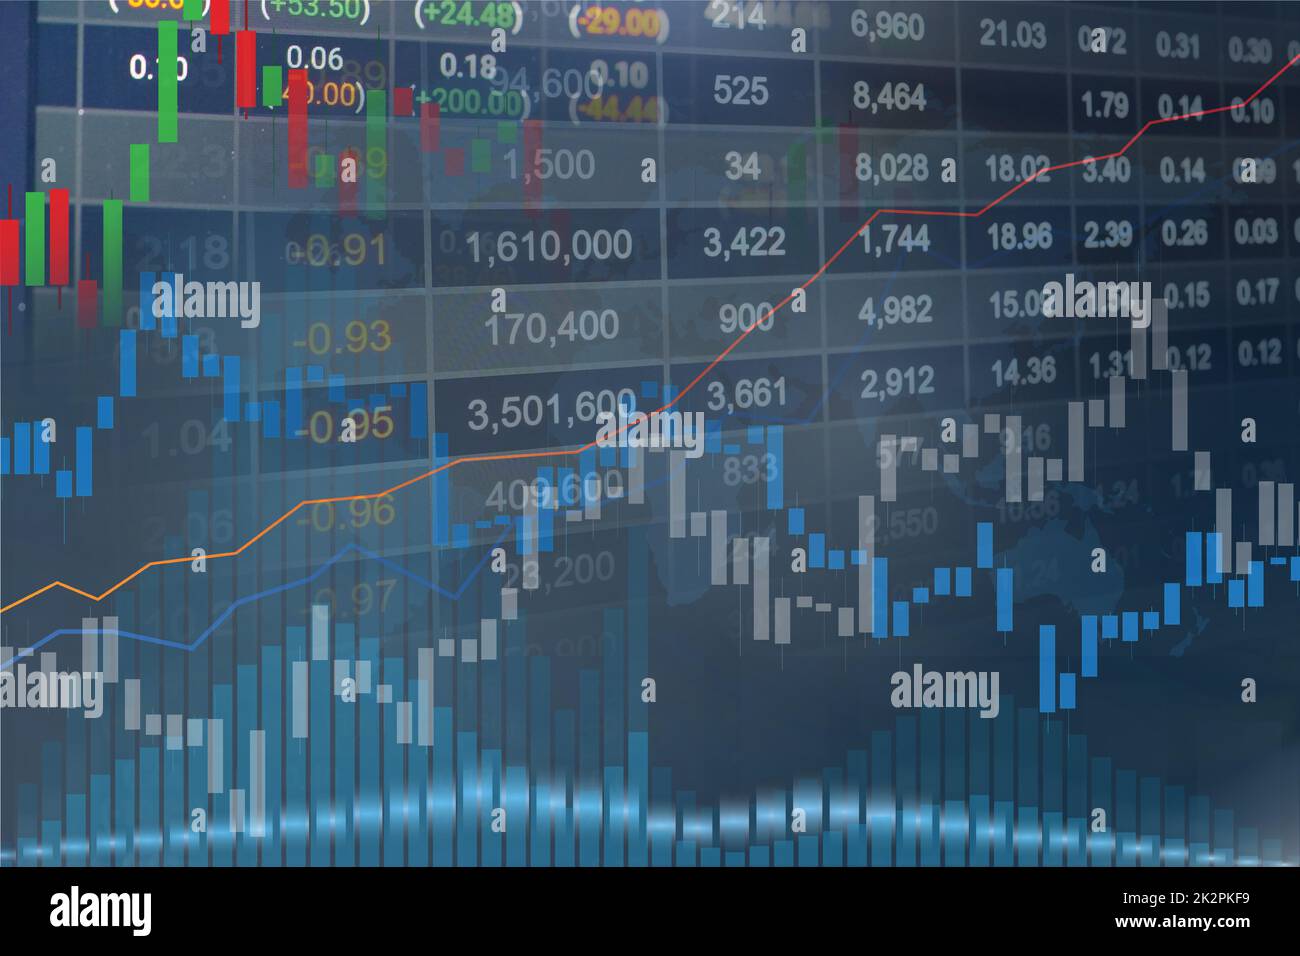 Bourse investissement trading financier et graphique graphique ou Forex pour analyser le financement de bénéfice tendances des données de base. Banque D'Images